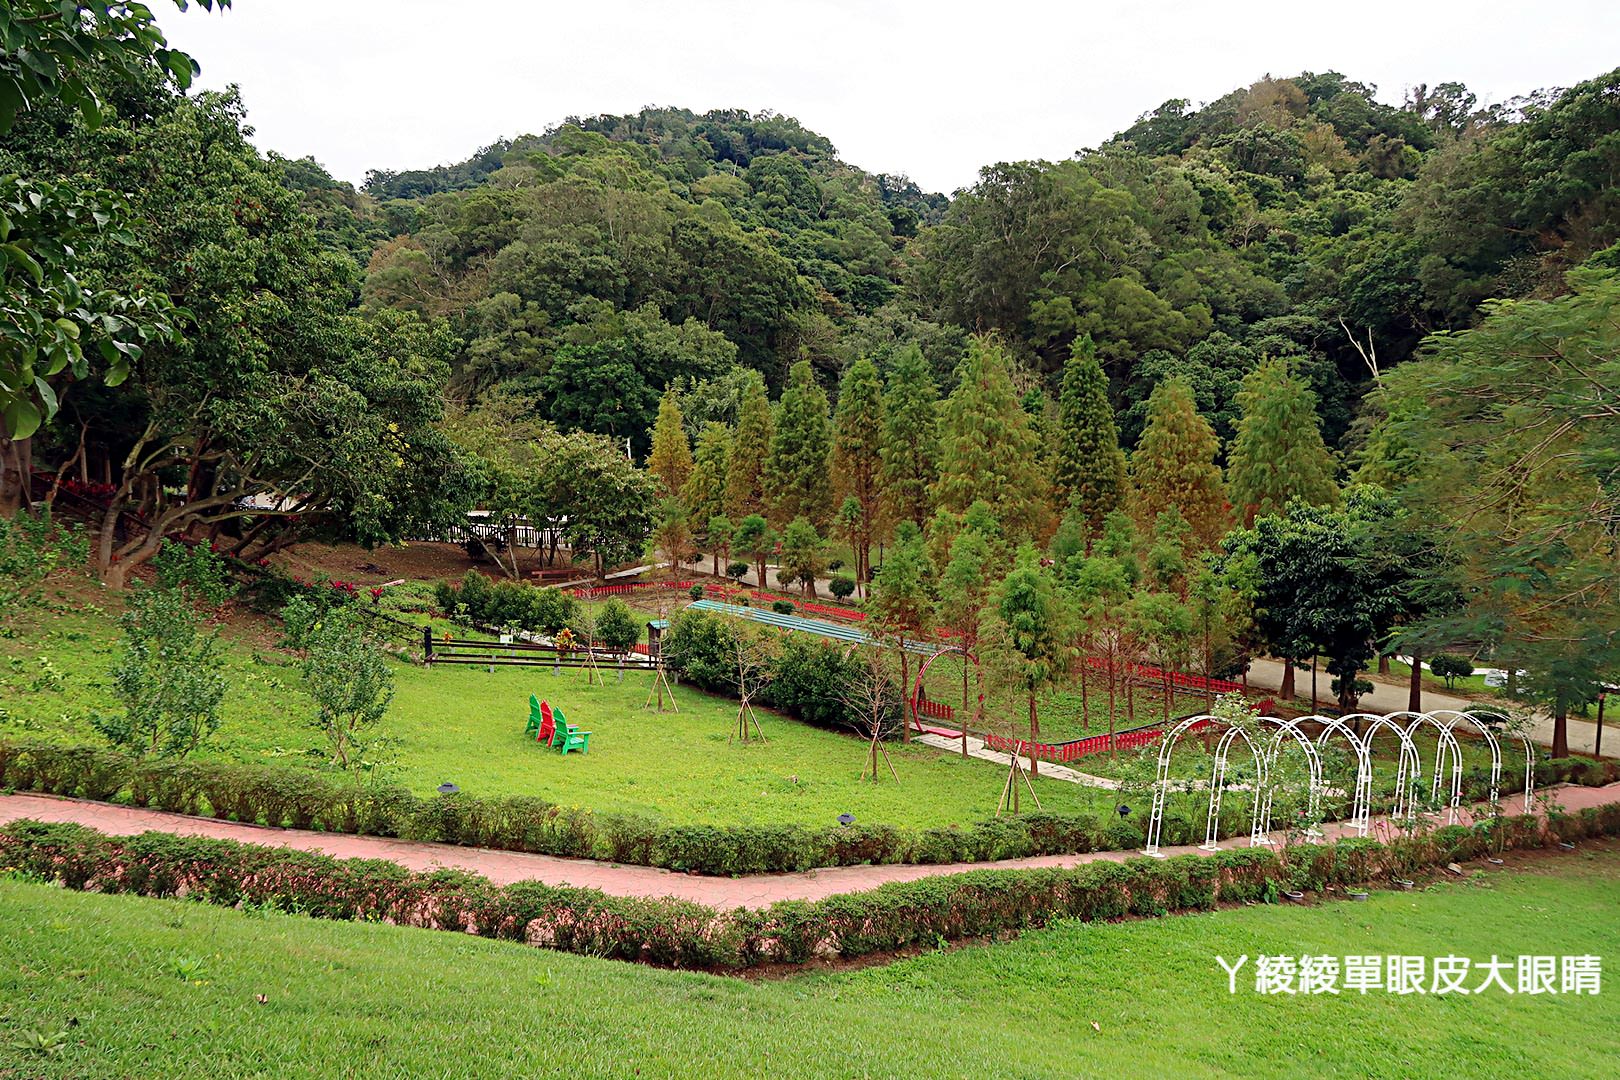 新竹旅遊景點心鮮森林八月份起暫停對外開放！放假來遊玩的旅客們注意別撲空